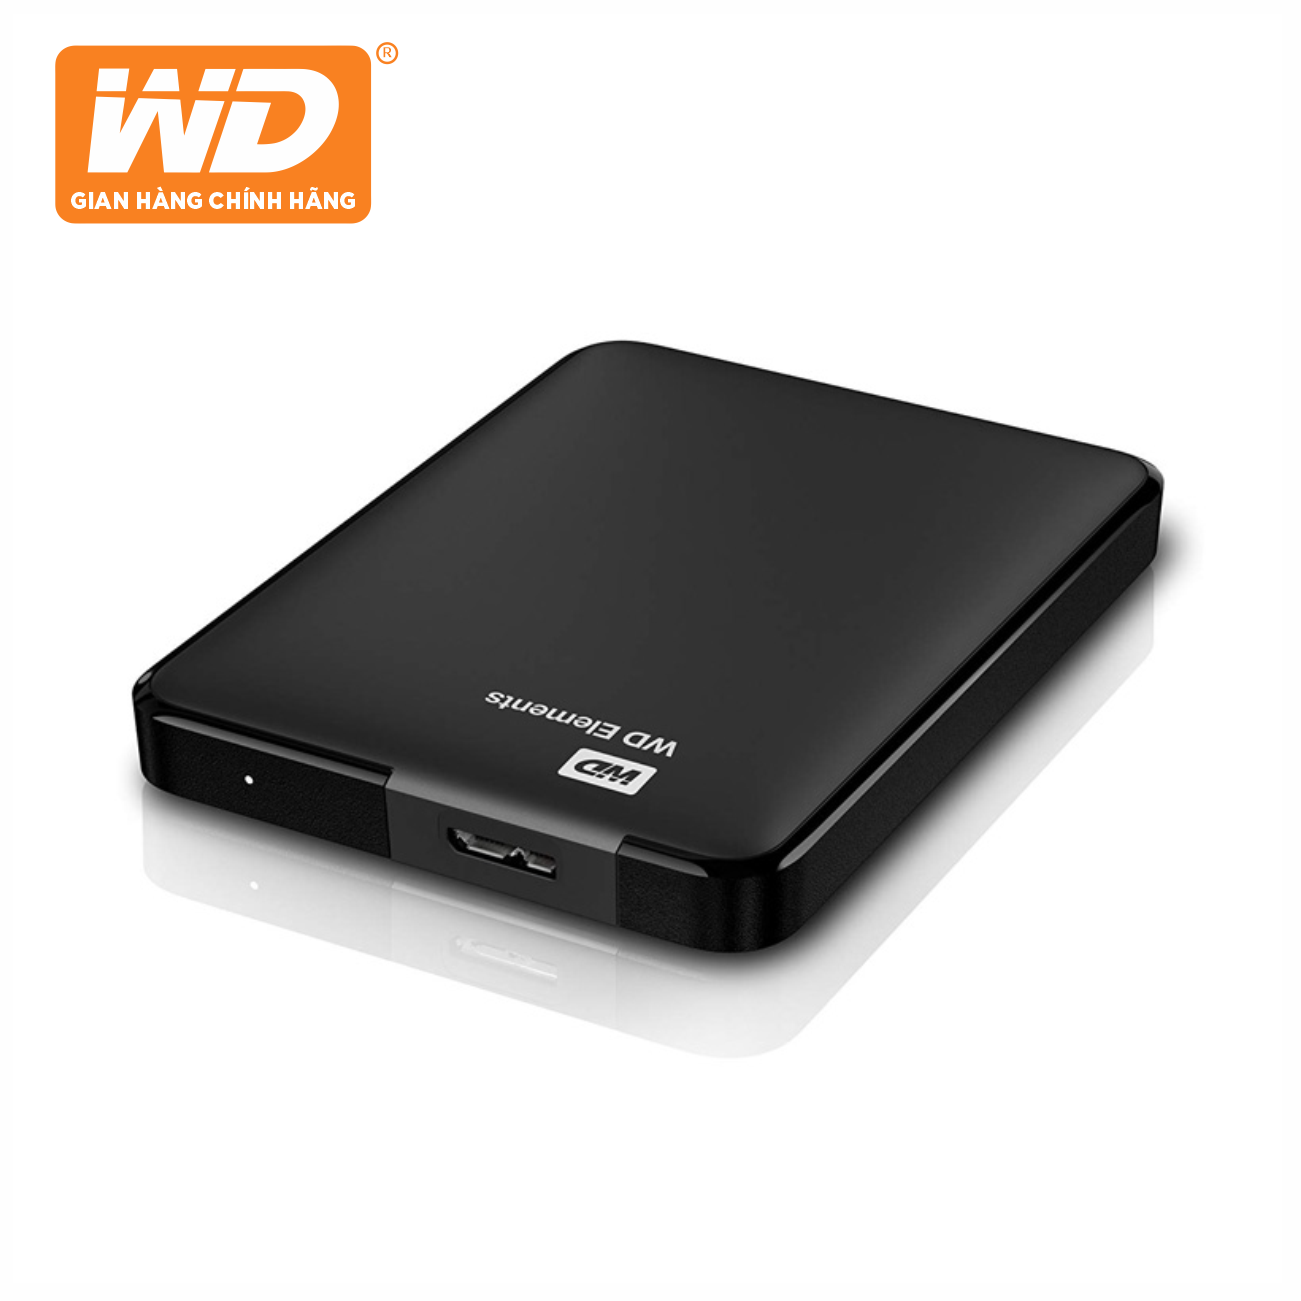 Ổ Cứng Di Động WD Elements Portable 750GB 2.5 USB 3.0 - WDBUZG7500ABK-WESN - Hàng Chính Hãng